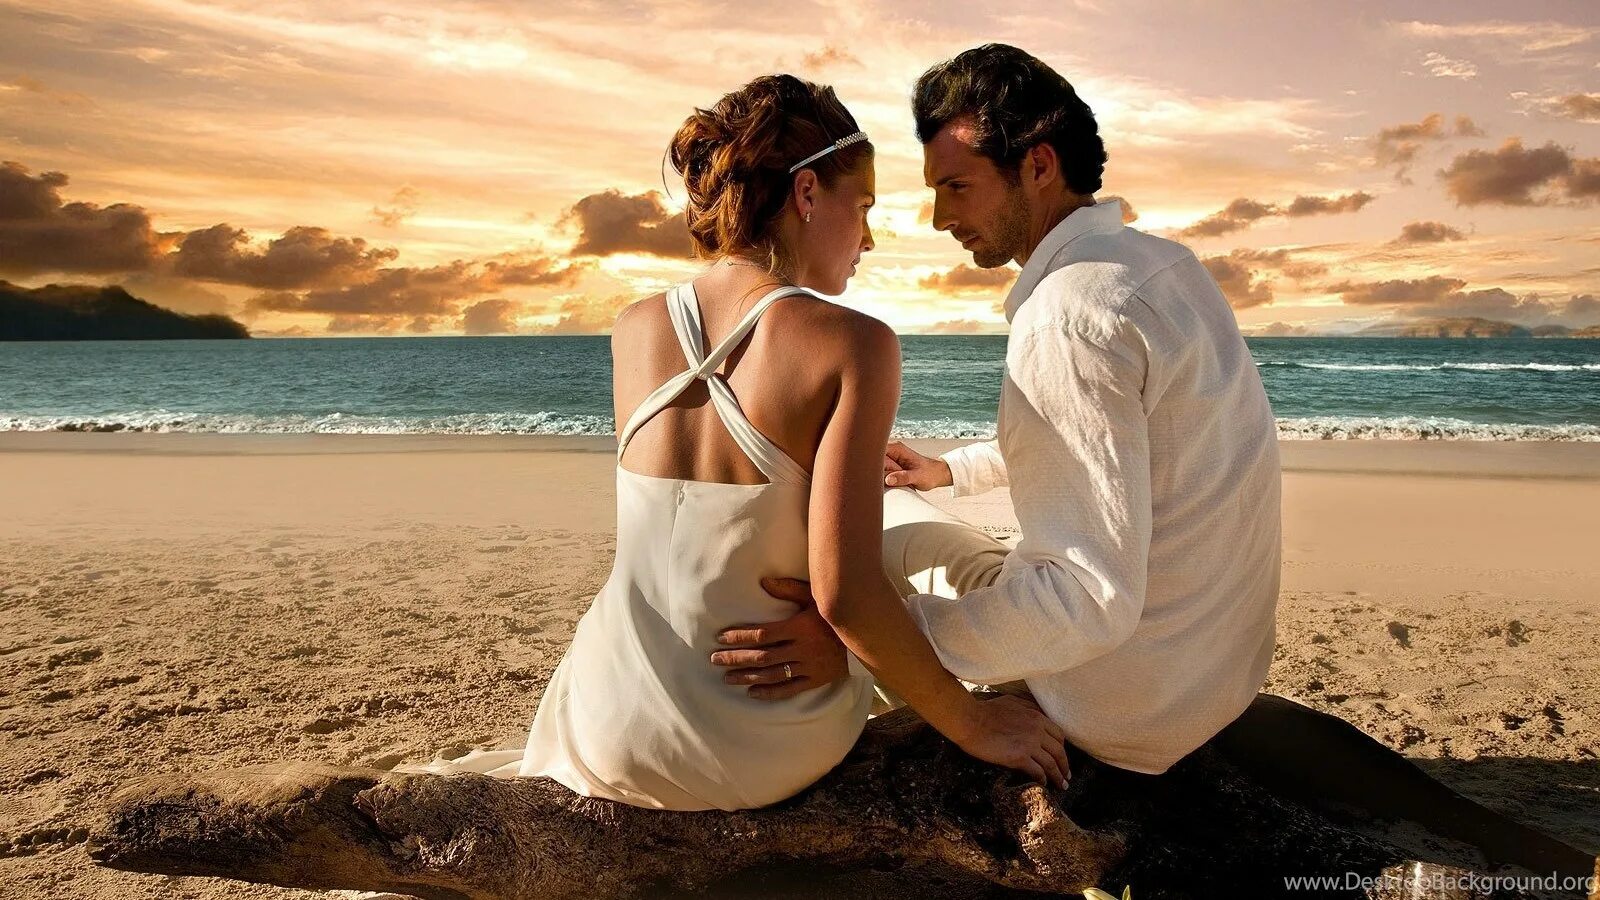 Счастливые влюбленные. Влюбленные на берегу моря. Парочка на берегу моря. Мужчина и женщина. Красивое видео мужчина с женщиной